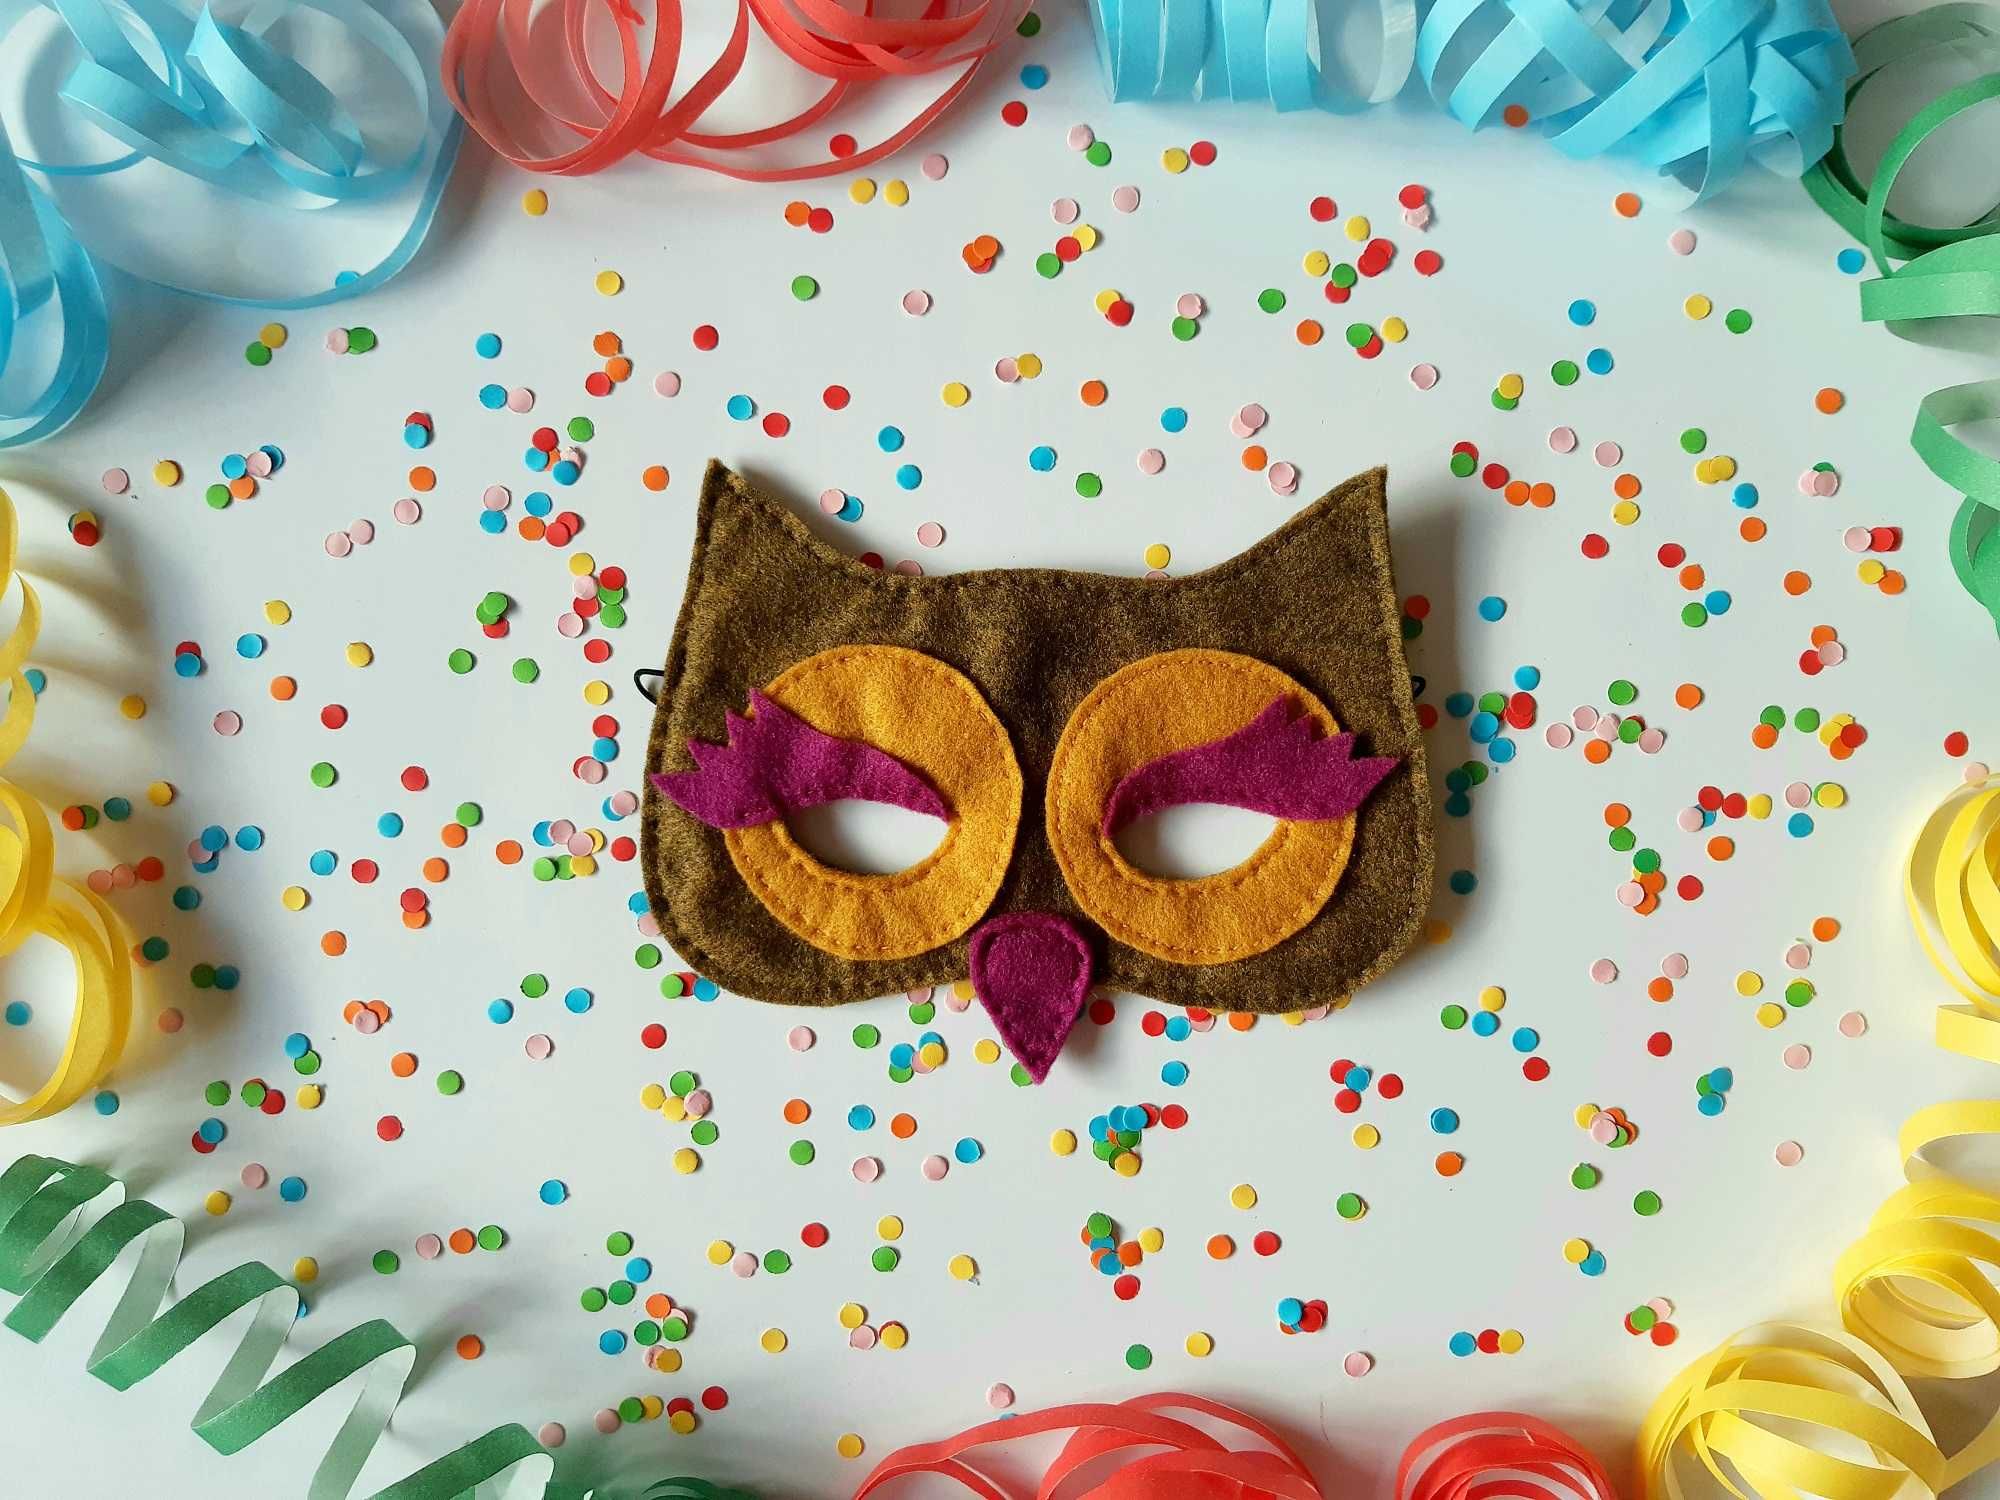 Maska karnawałowo-urodzinowa sowa